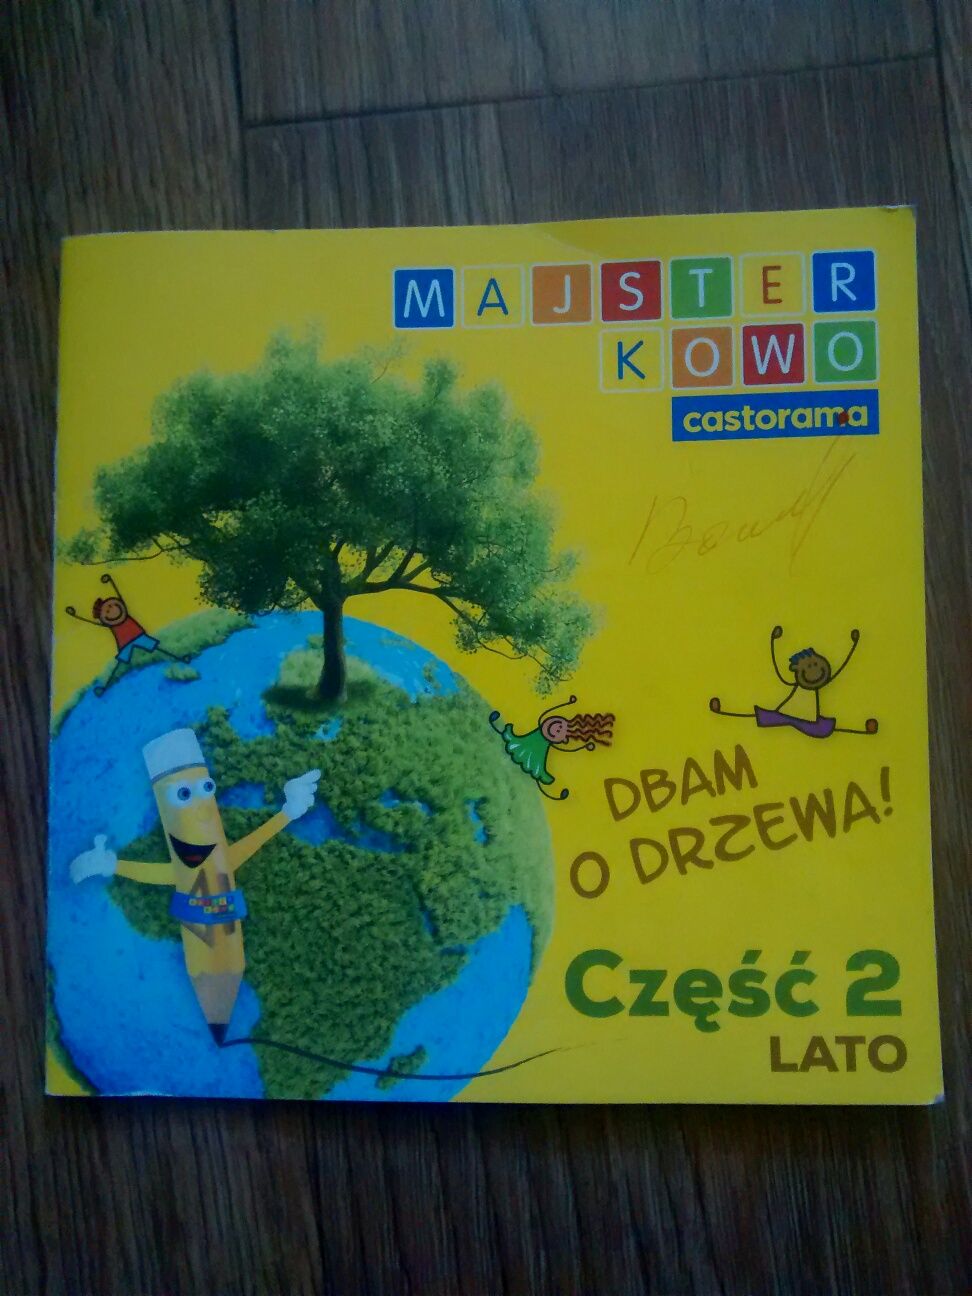 Польский язык. Для начинающих.1и 2 части( Польша)+брошюра+CD